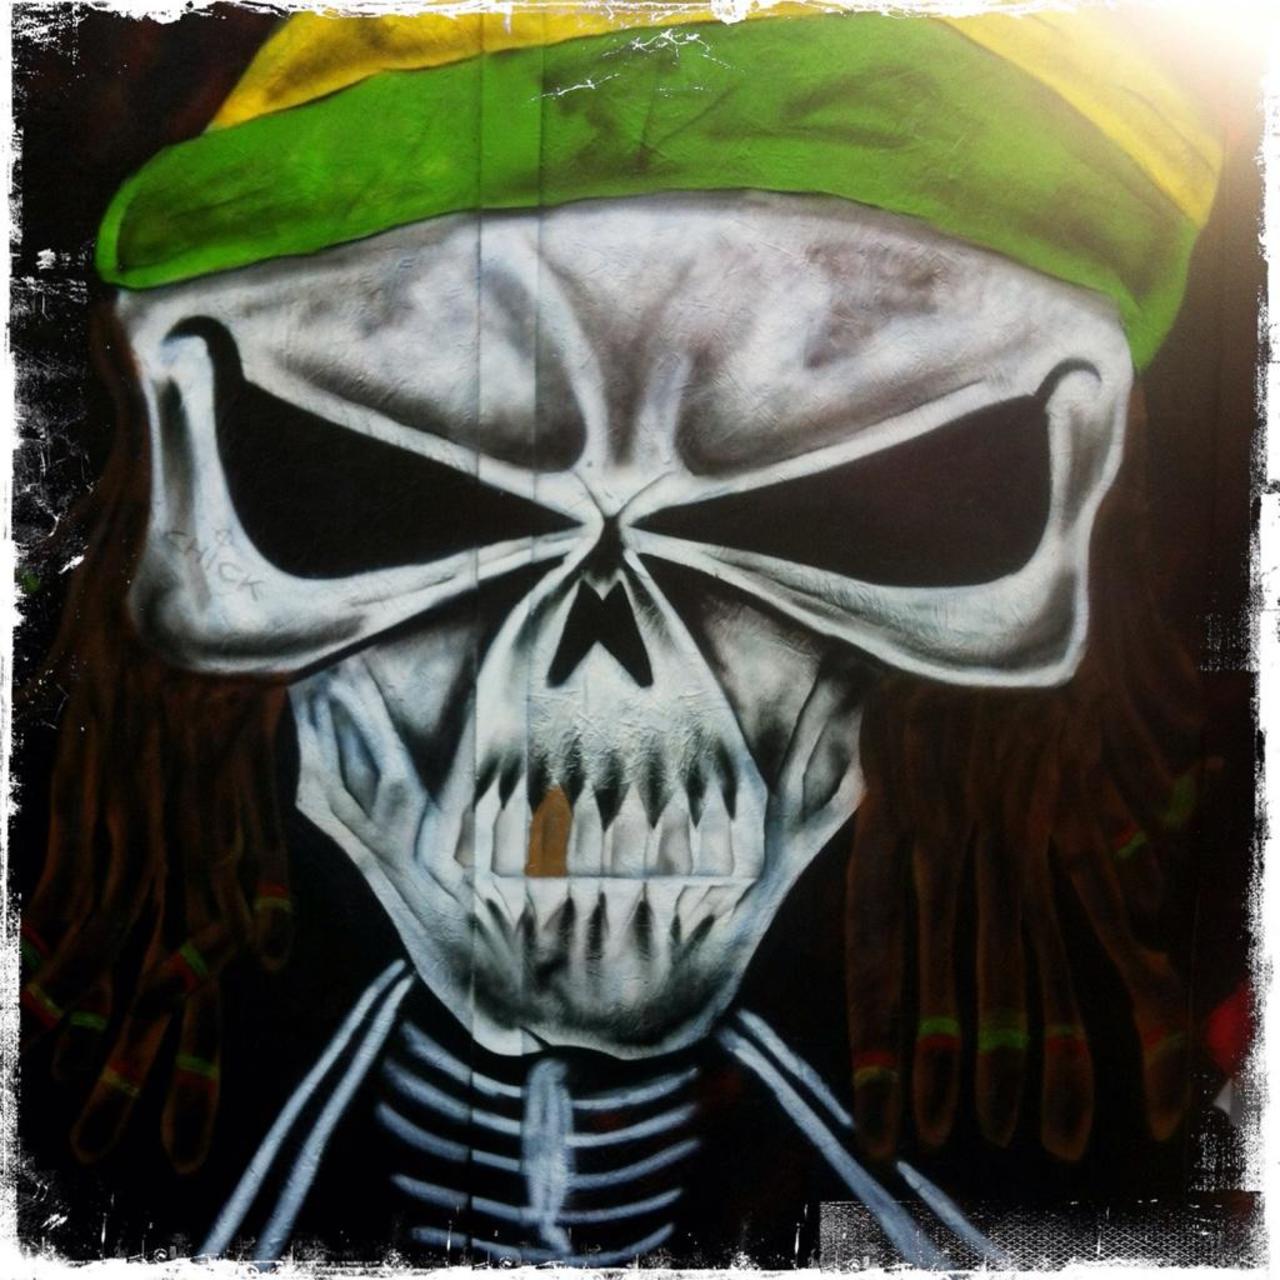 Jah War Kills by @geestreetart | Hackney Road | #streetart #art #graffiti 

@ShoreditchGraf @MariaB074 http://t.co/2t4fOWWR8s